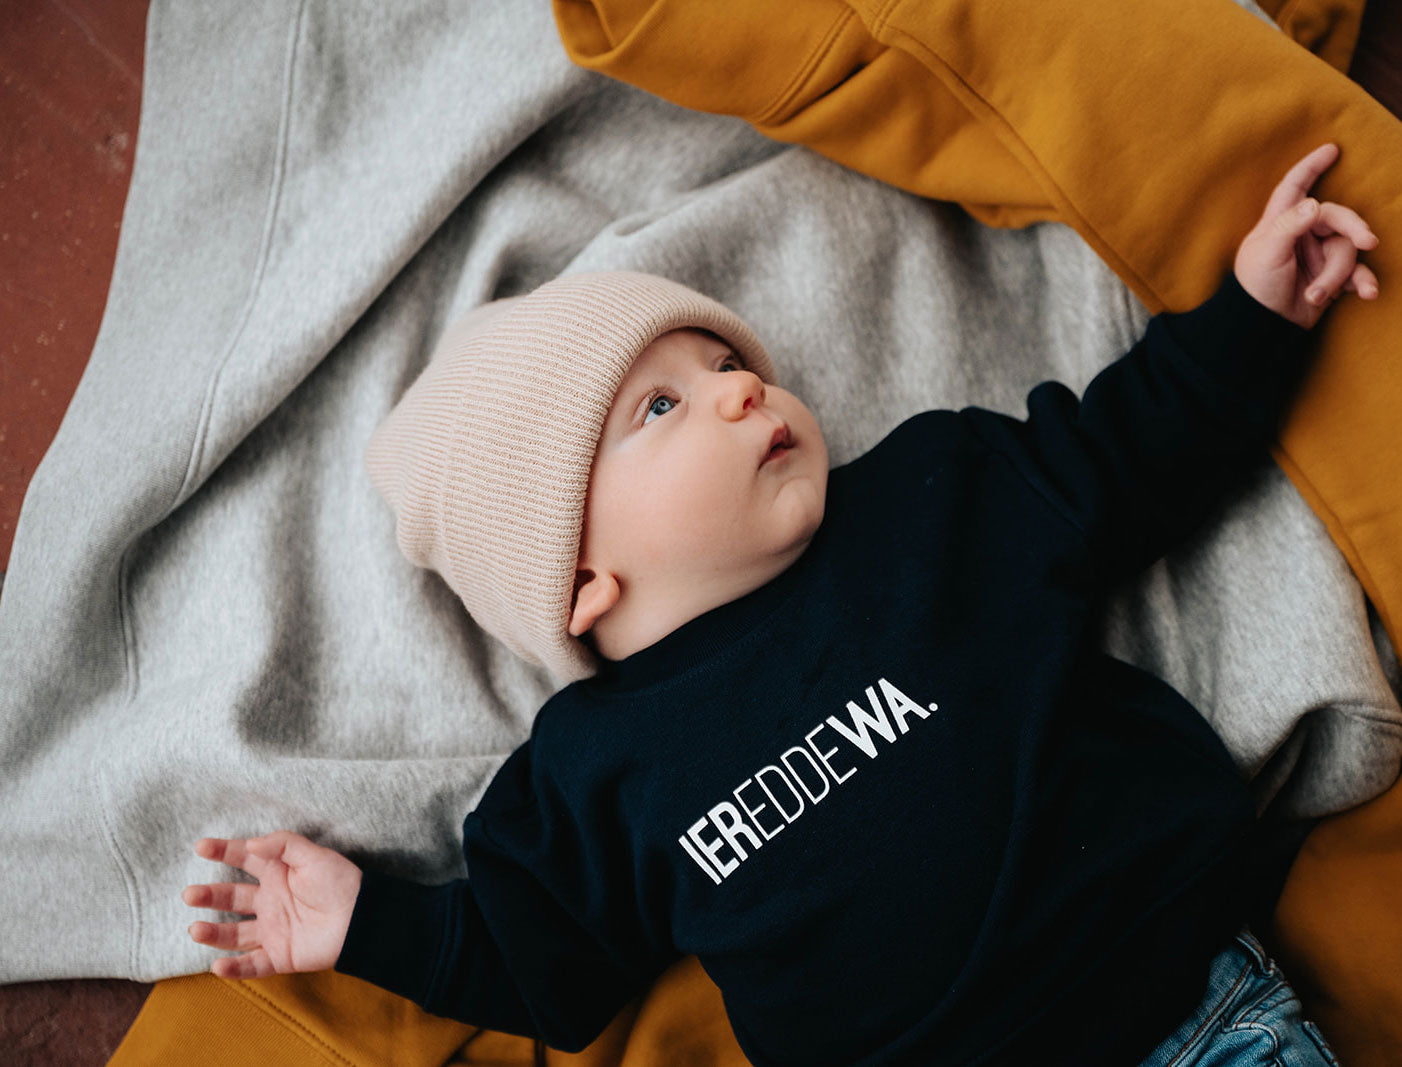 Baby met een blauwe trui voor baby's met opdruk IEREDDEWA.